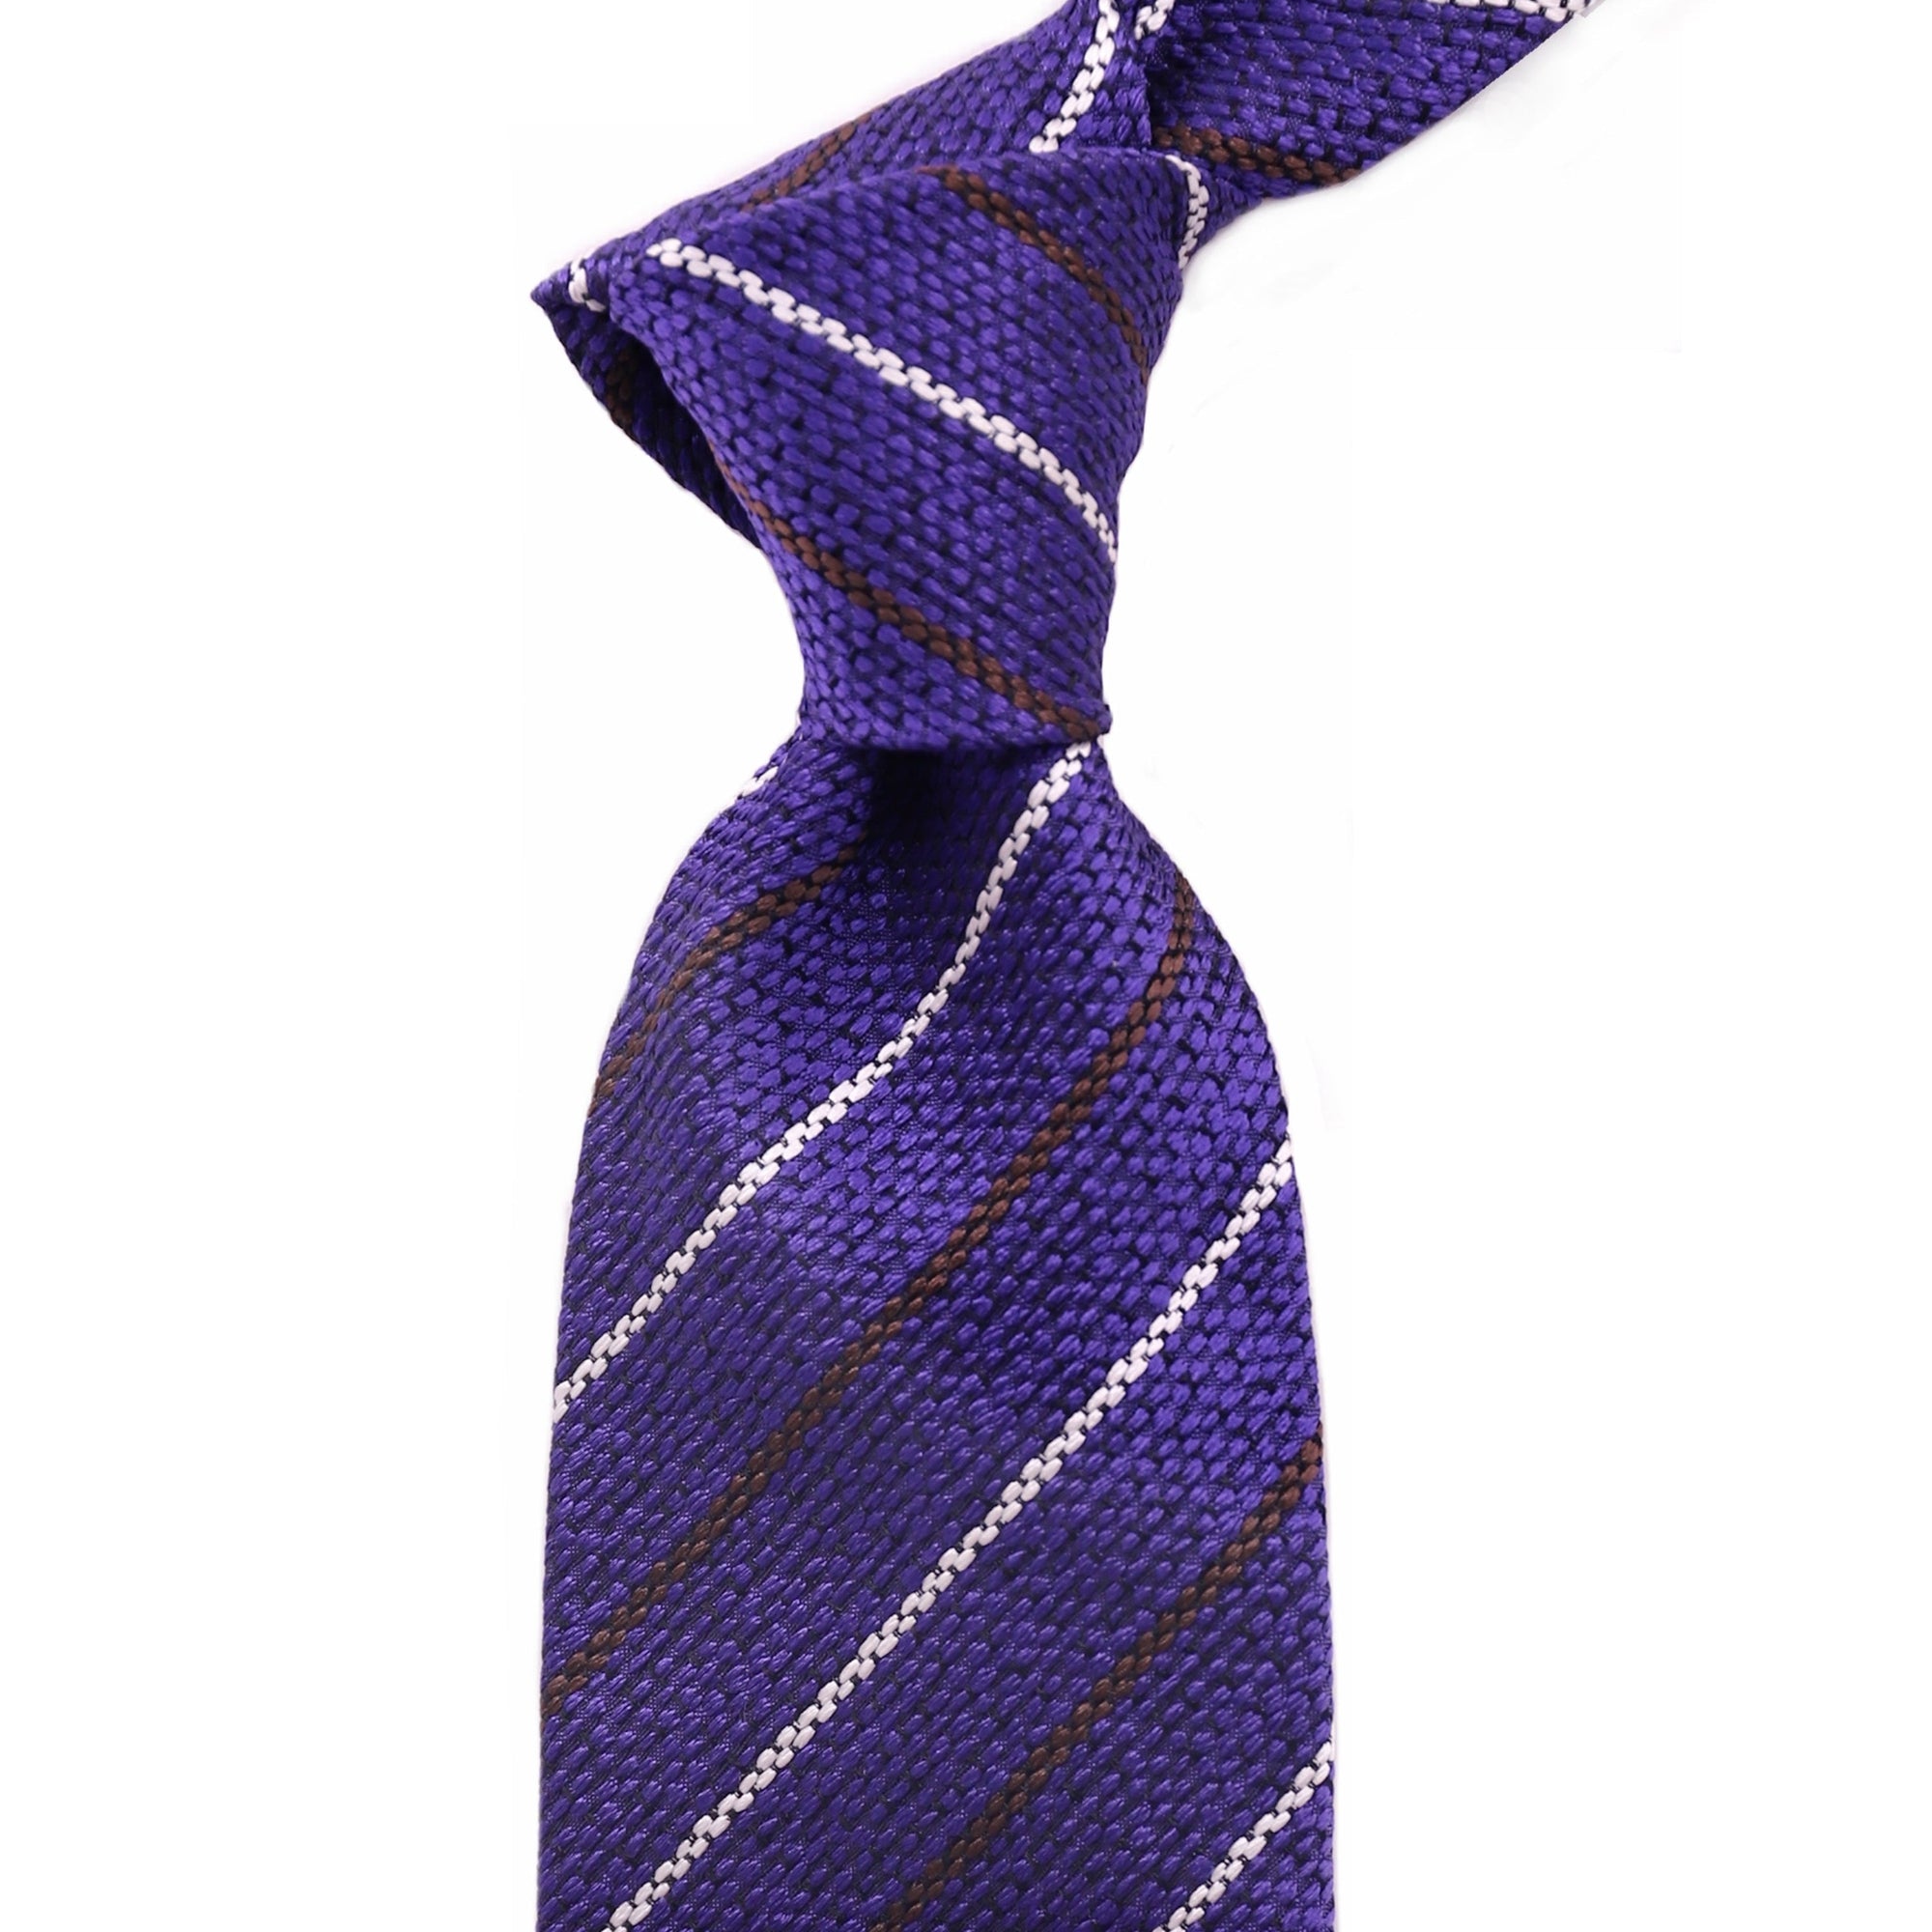 ERMENEGILDO ZEGNA Silk Tie Purple with white and Maroon Stripe 21-Cufflinks.com.sg | Neckties.com.sg